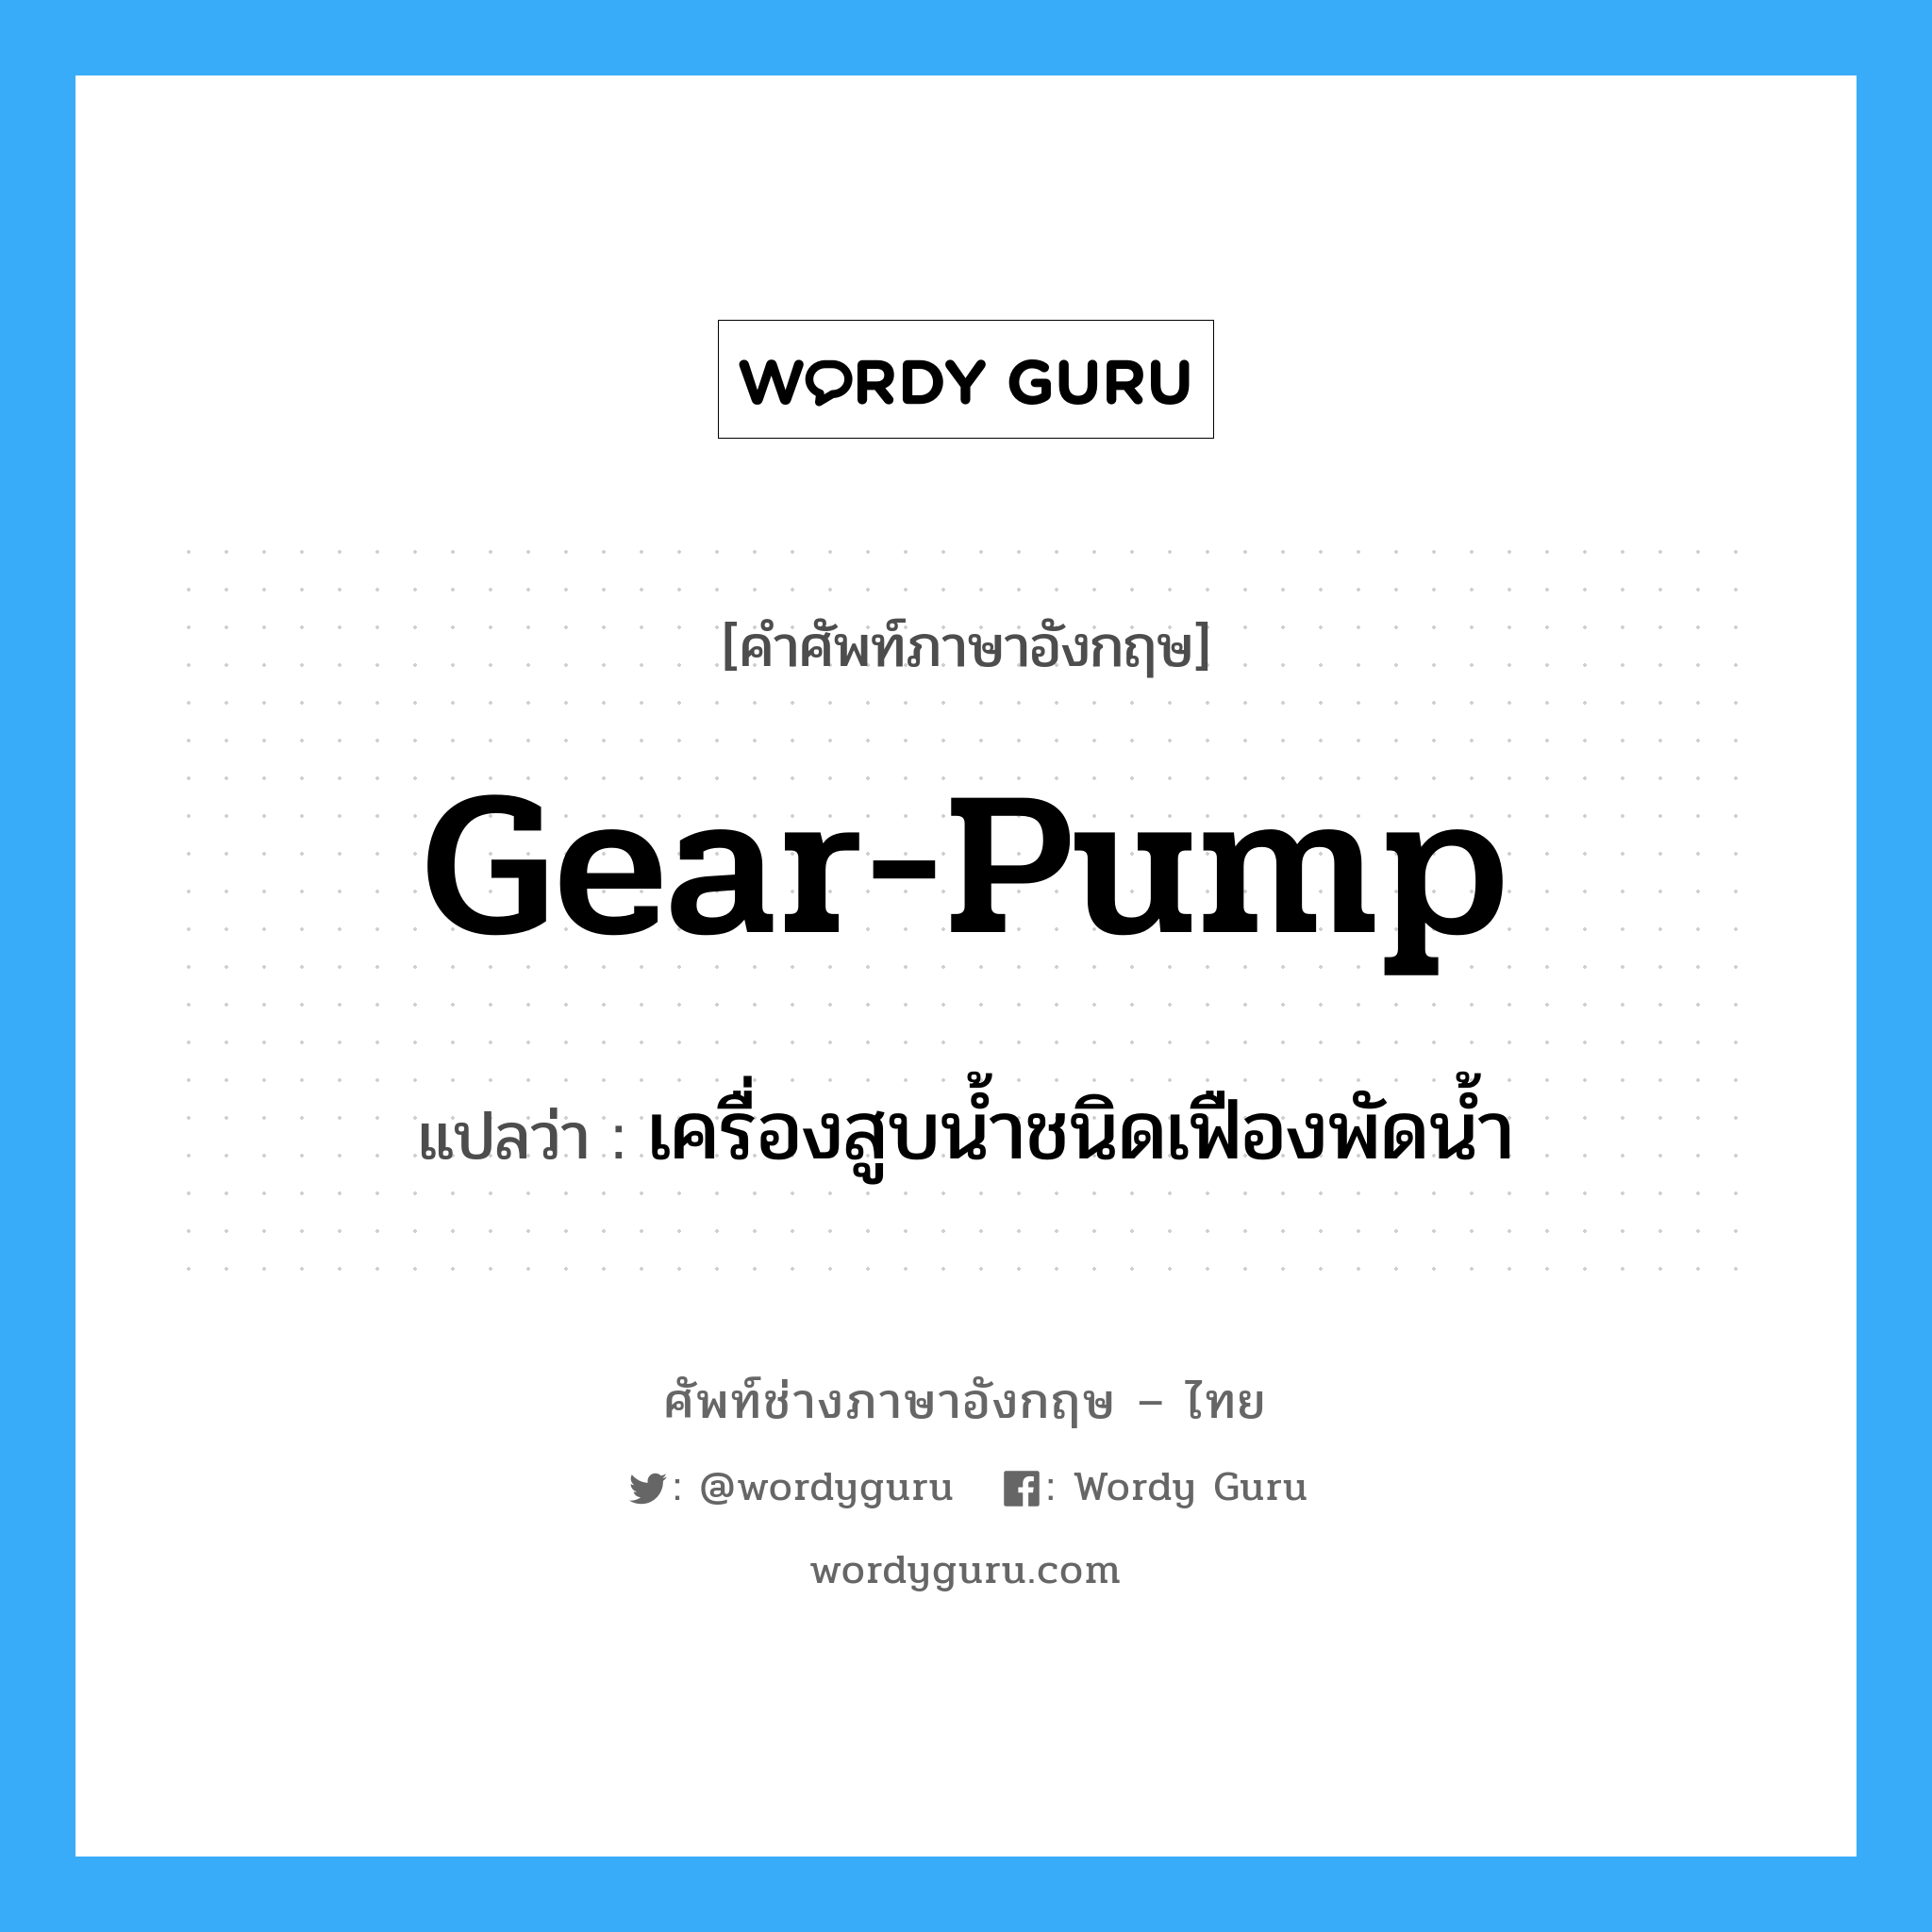 gear pump แปลว่า?, คำศัพท์ช่างภาษาอังกฤษ - ไทย gear-pump คำศัพท์ภาษาอังกฤษ gear-pump แปลว่า เครื่องสูบน้ำชนิดเฟืองพัดน้ำ